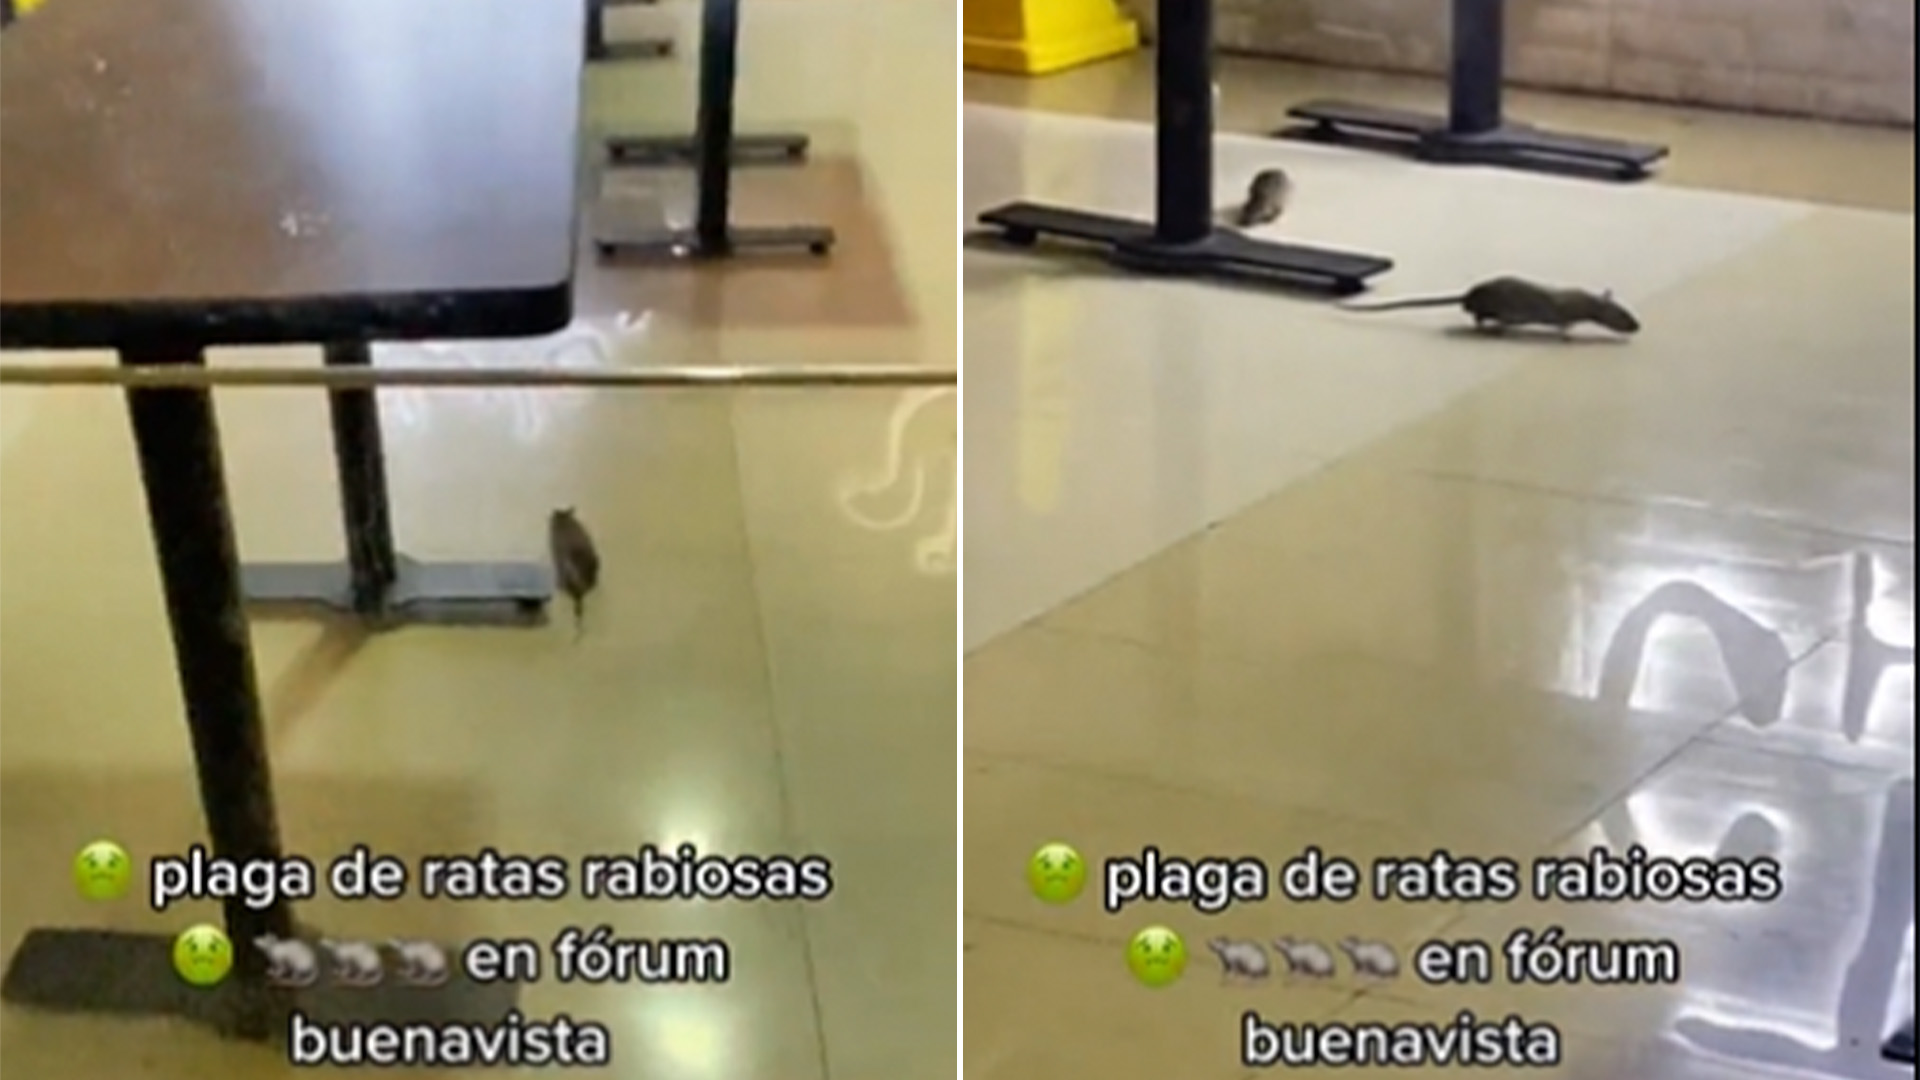 Así es como jugaban estas ratas en el piso del establecimiento Foto: captura de pantalla TikTok/@anpazzz88